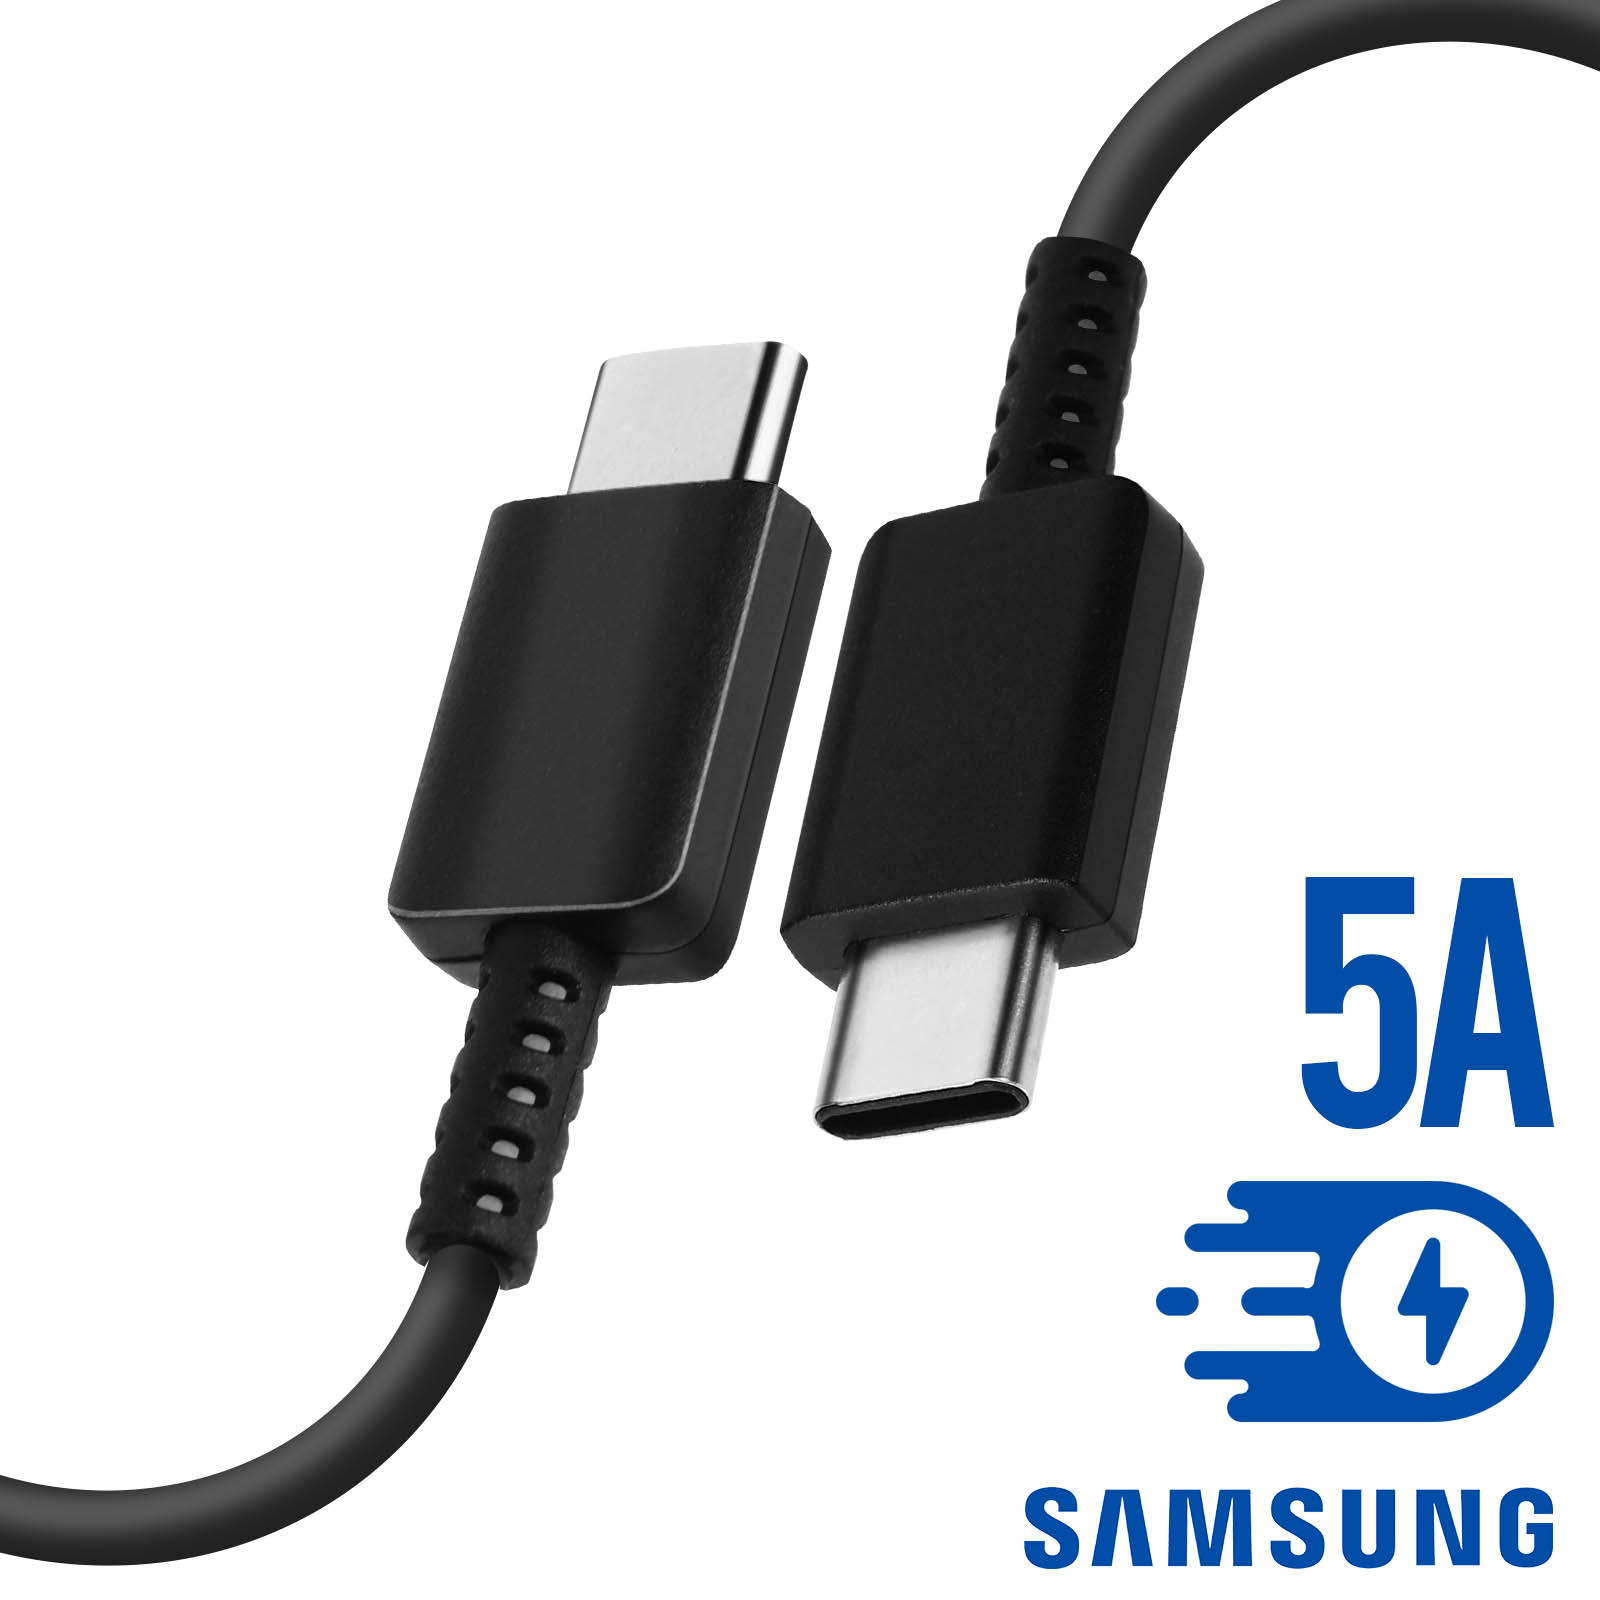 Câble USB C Officiel Samsung EP-DN980, Charge Rapide 5A - 1m - Noir -  Français